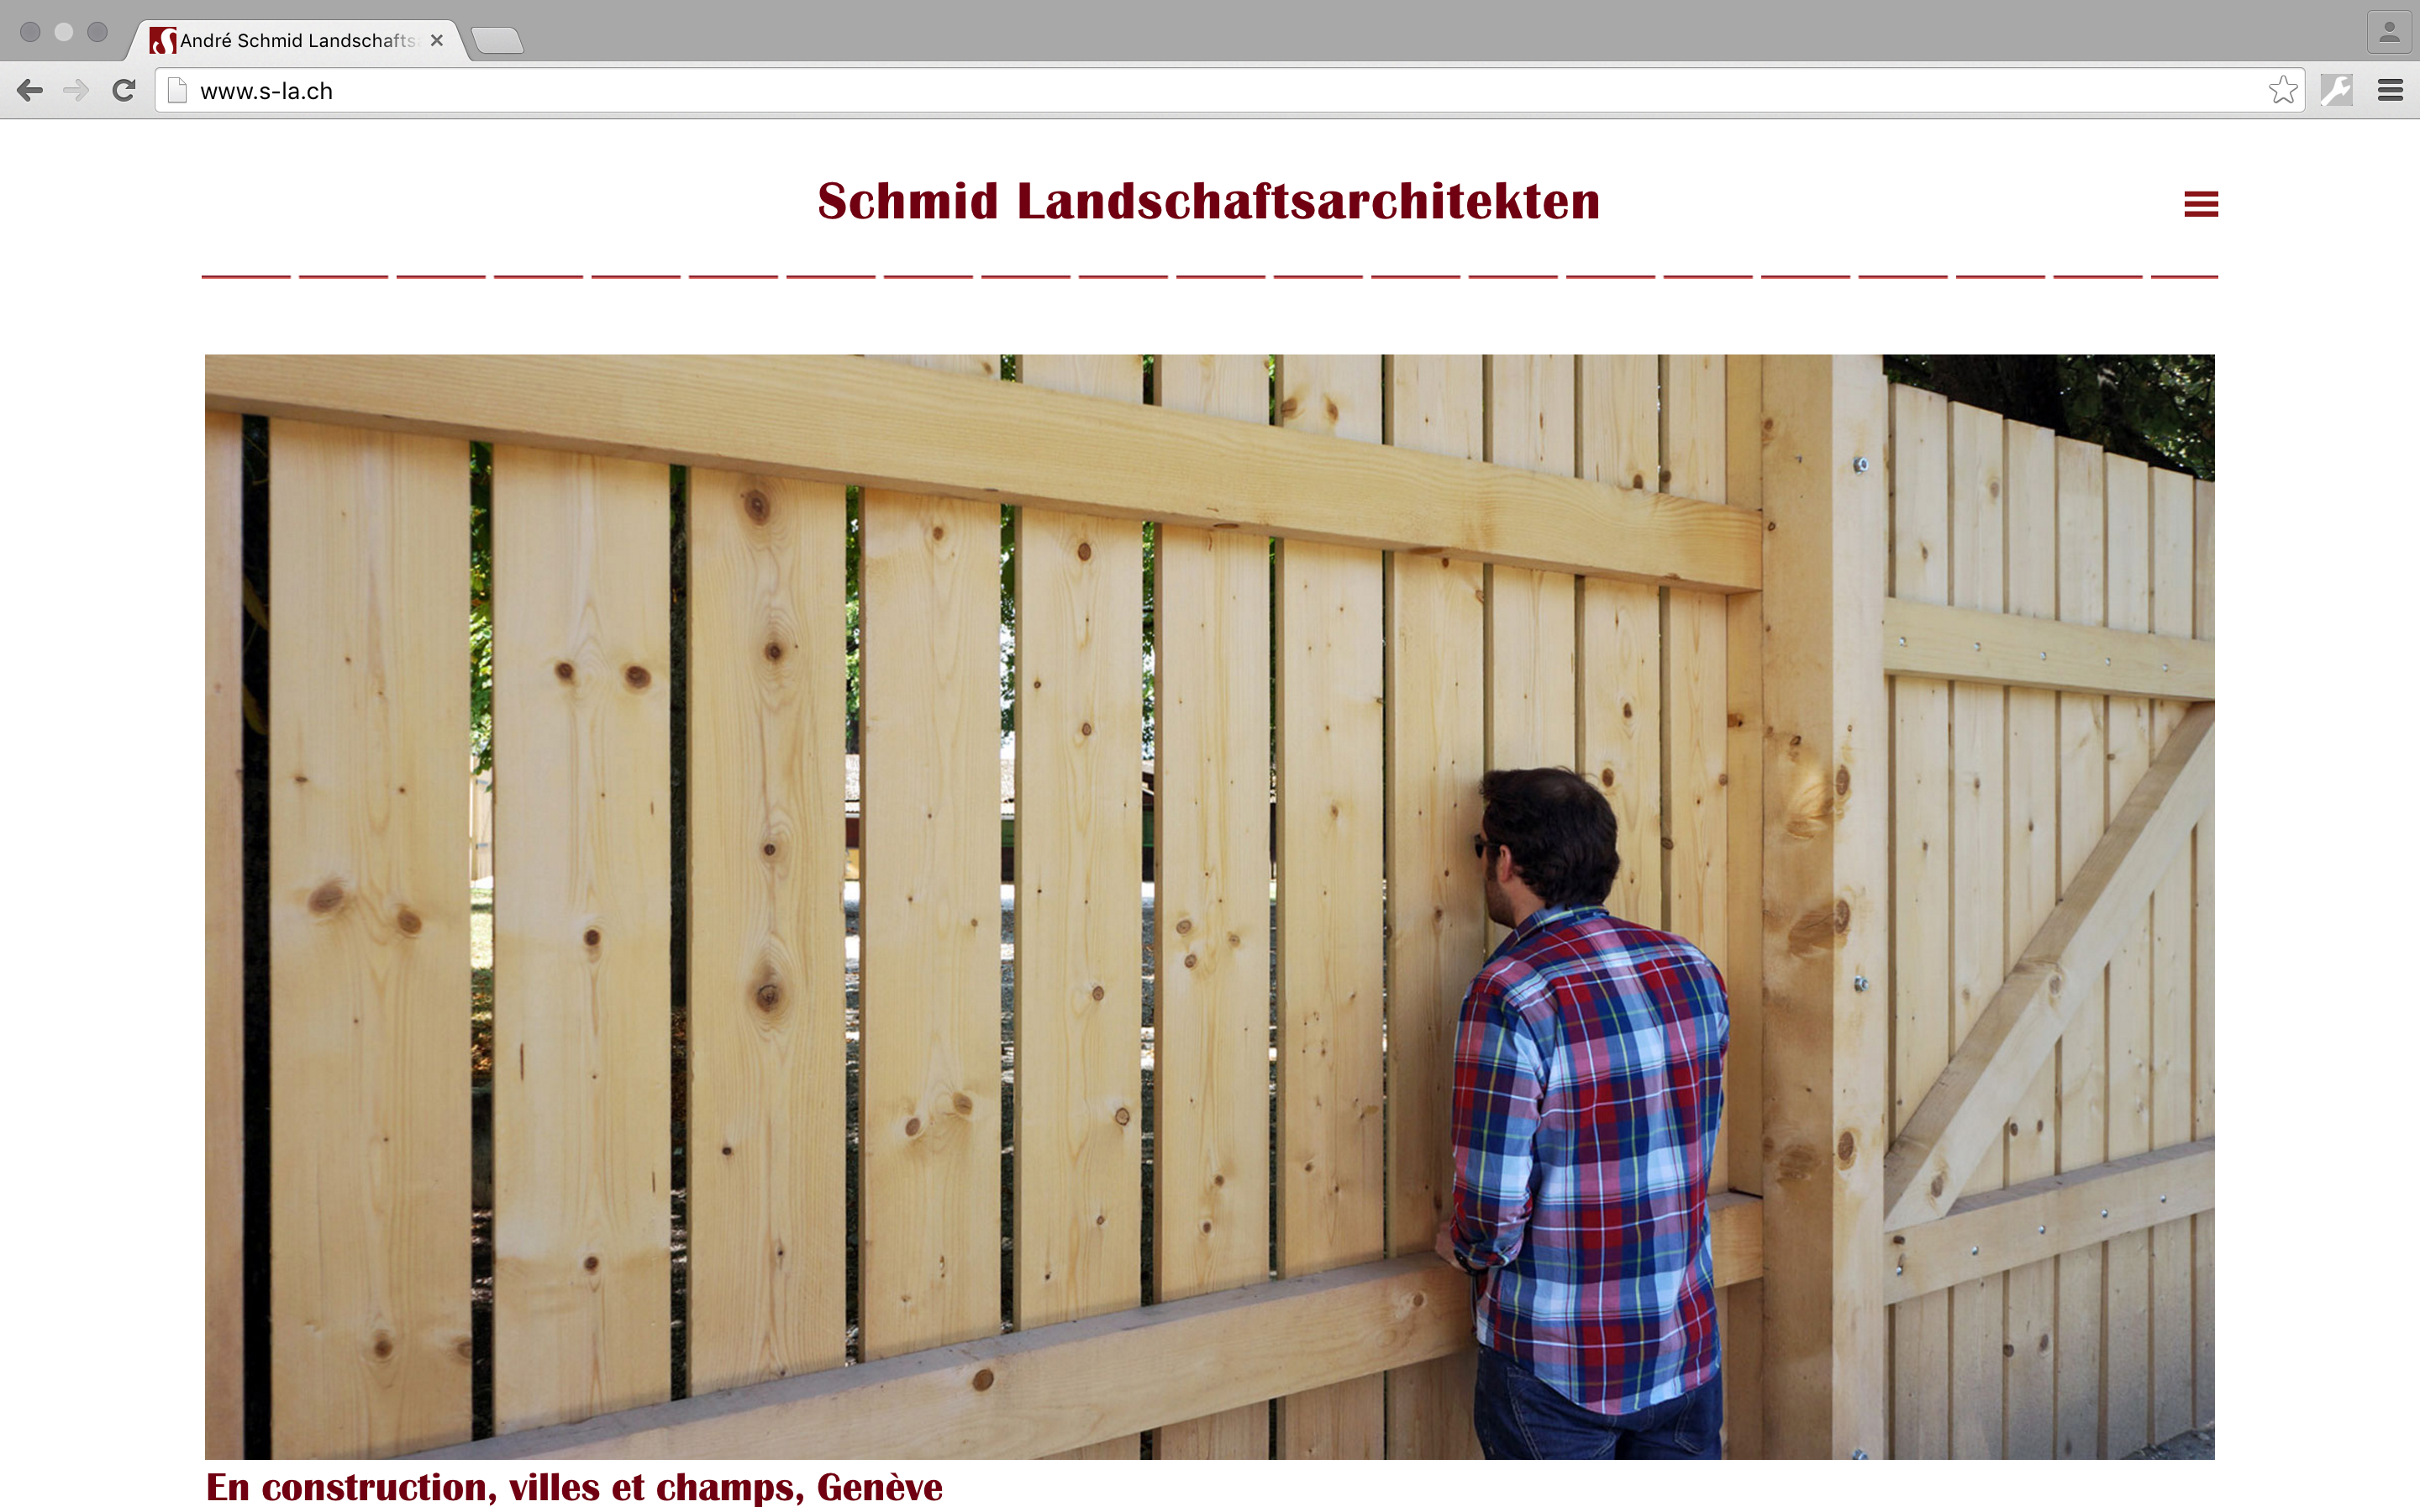 Website für Schmid Landschaftsarchitekten Zürich, 2016, zusammen mit Hanna Züllig